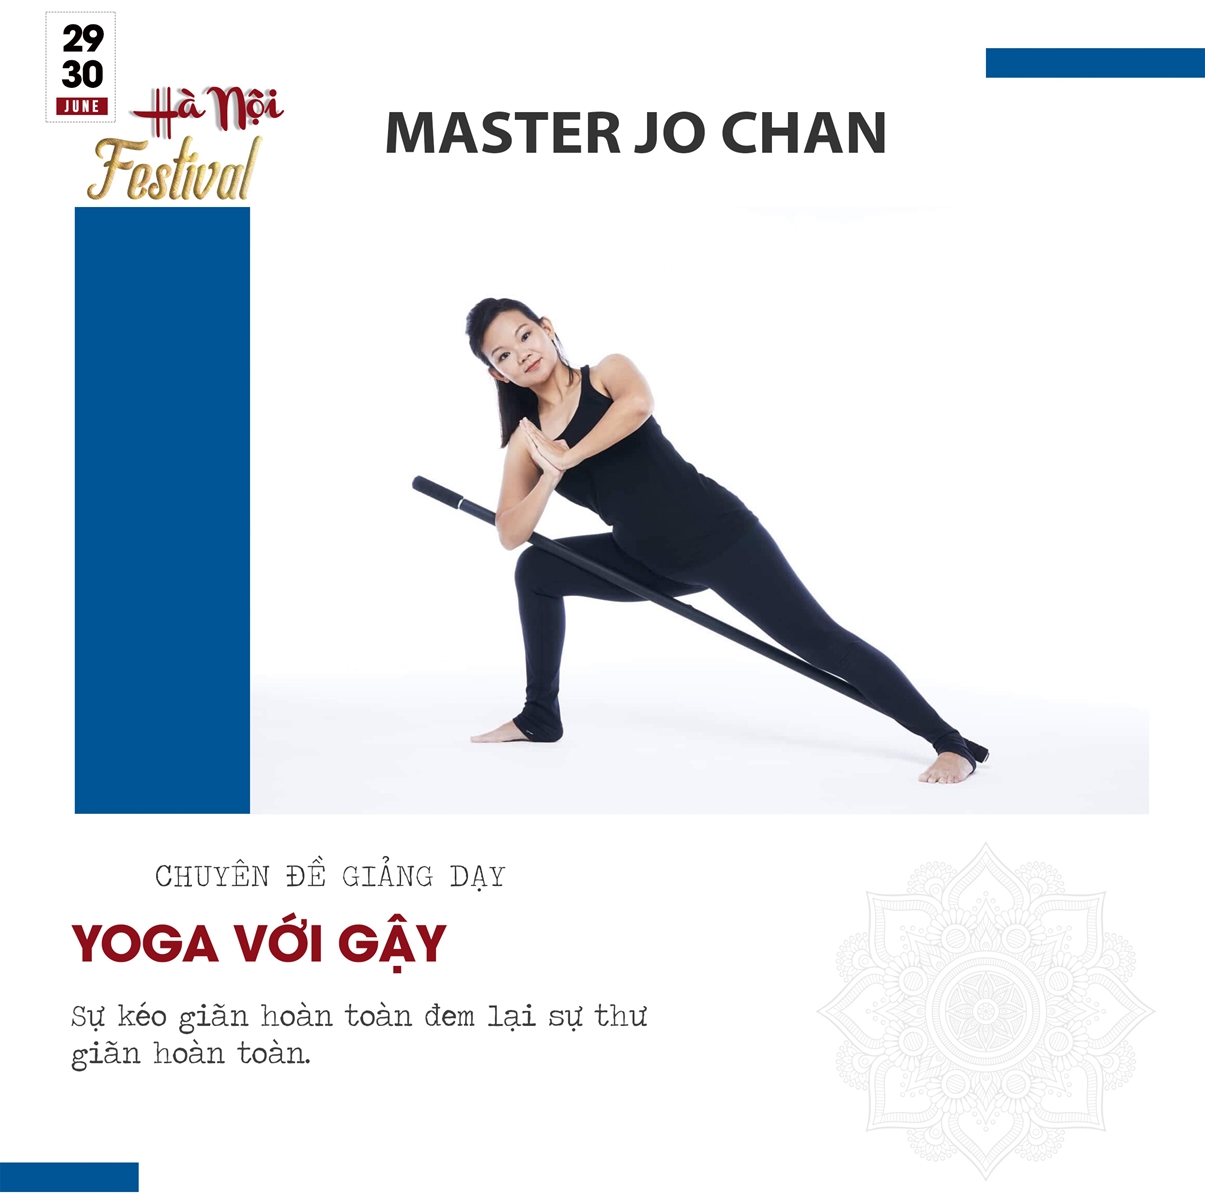 ‘Dàn sao’ giảng viên hàng đầu thế giới và Việt Nam quy tụ tại Hà Nội Yoga, Fitness, Zumba Dance Festival 2019